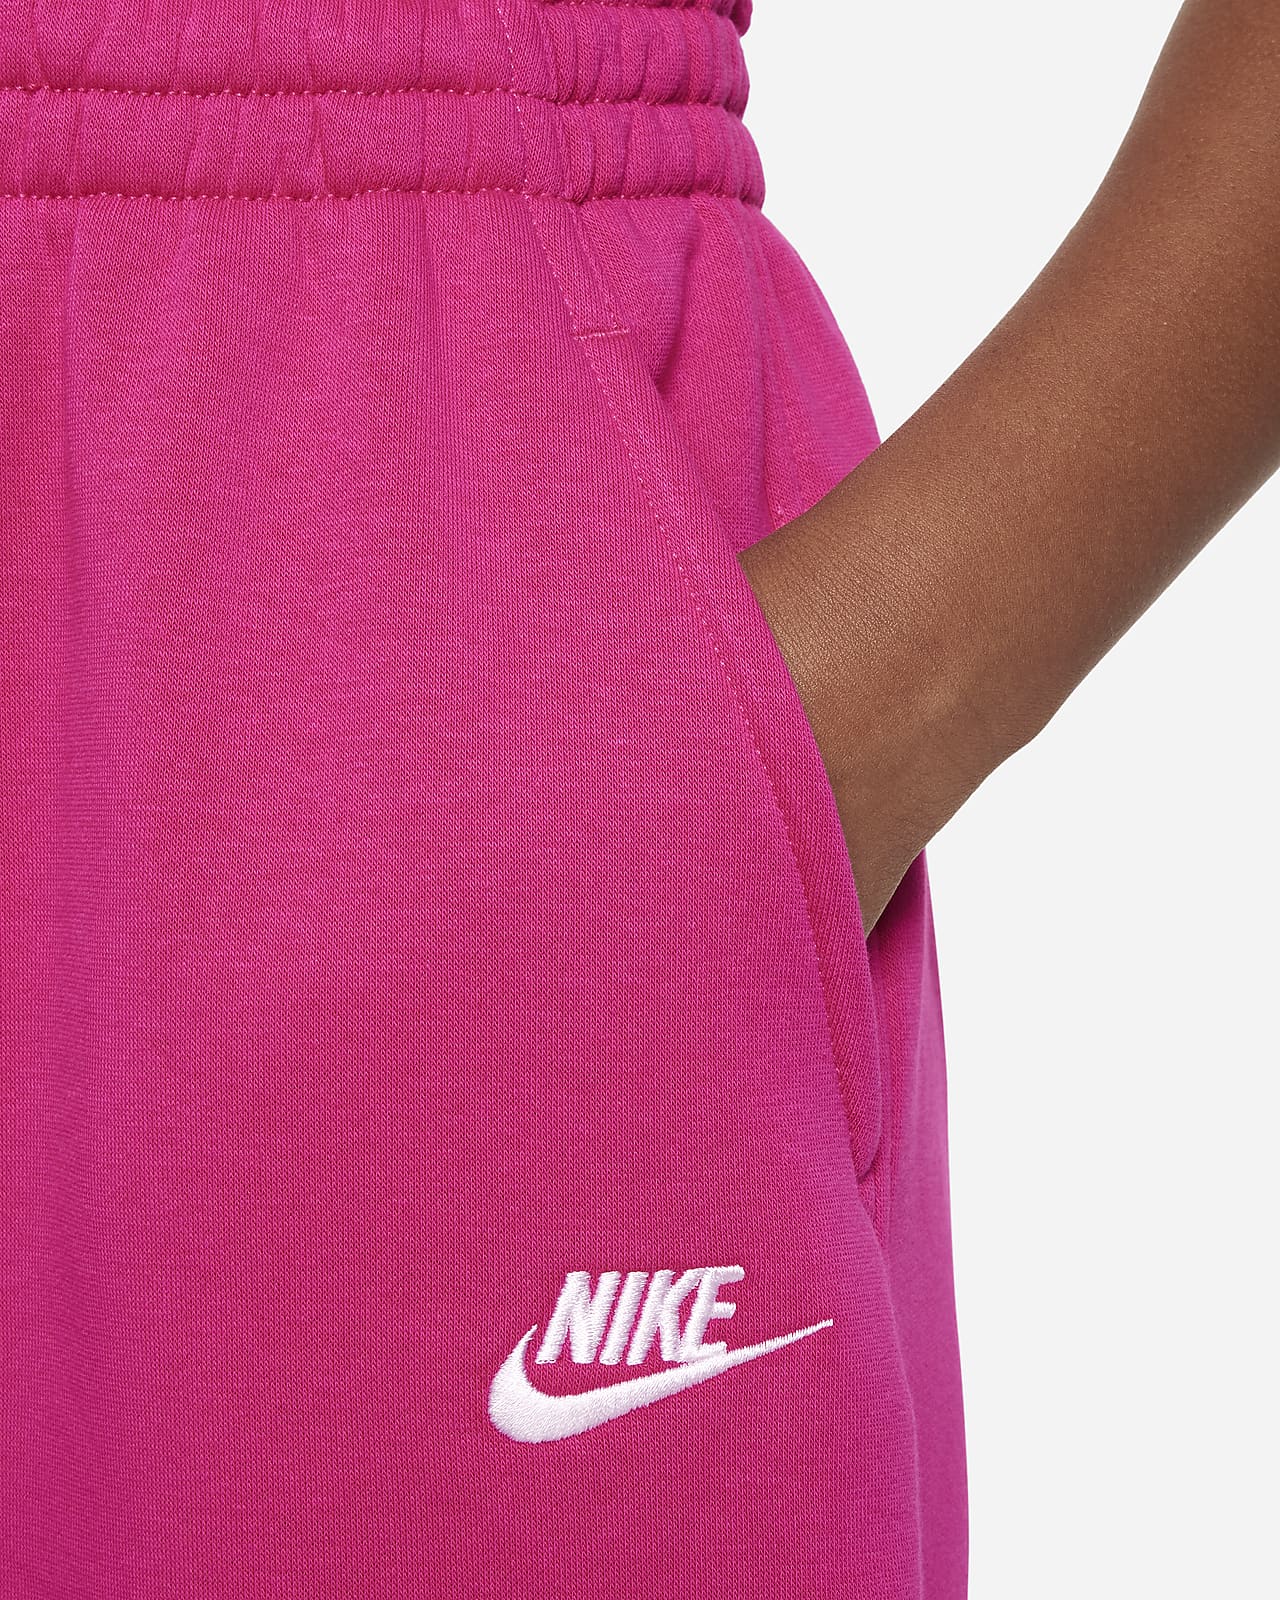 Buy Nike Women's Sportswear Club Fleece Sweatpants Pink in Dubai, UAE -SSS